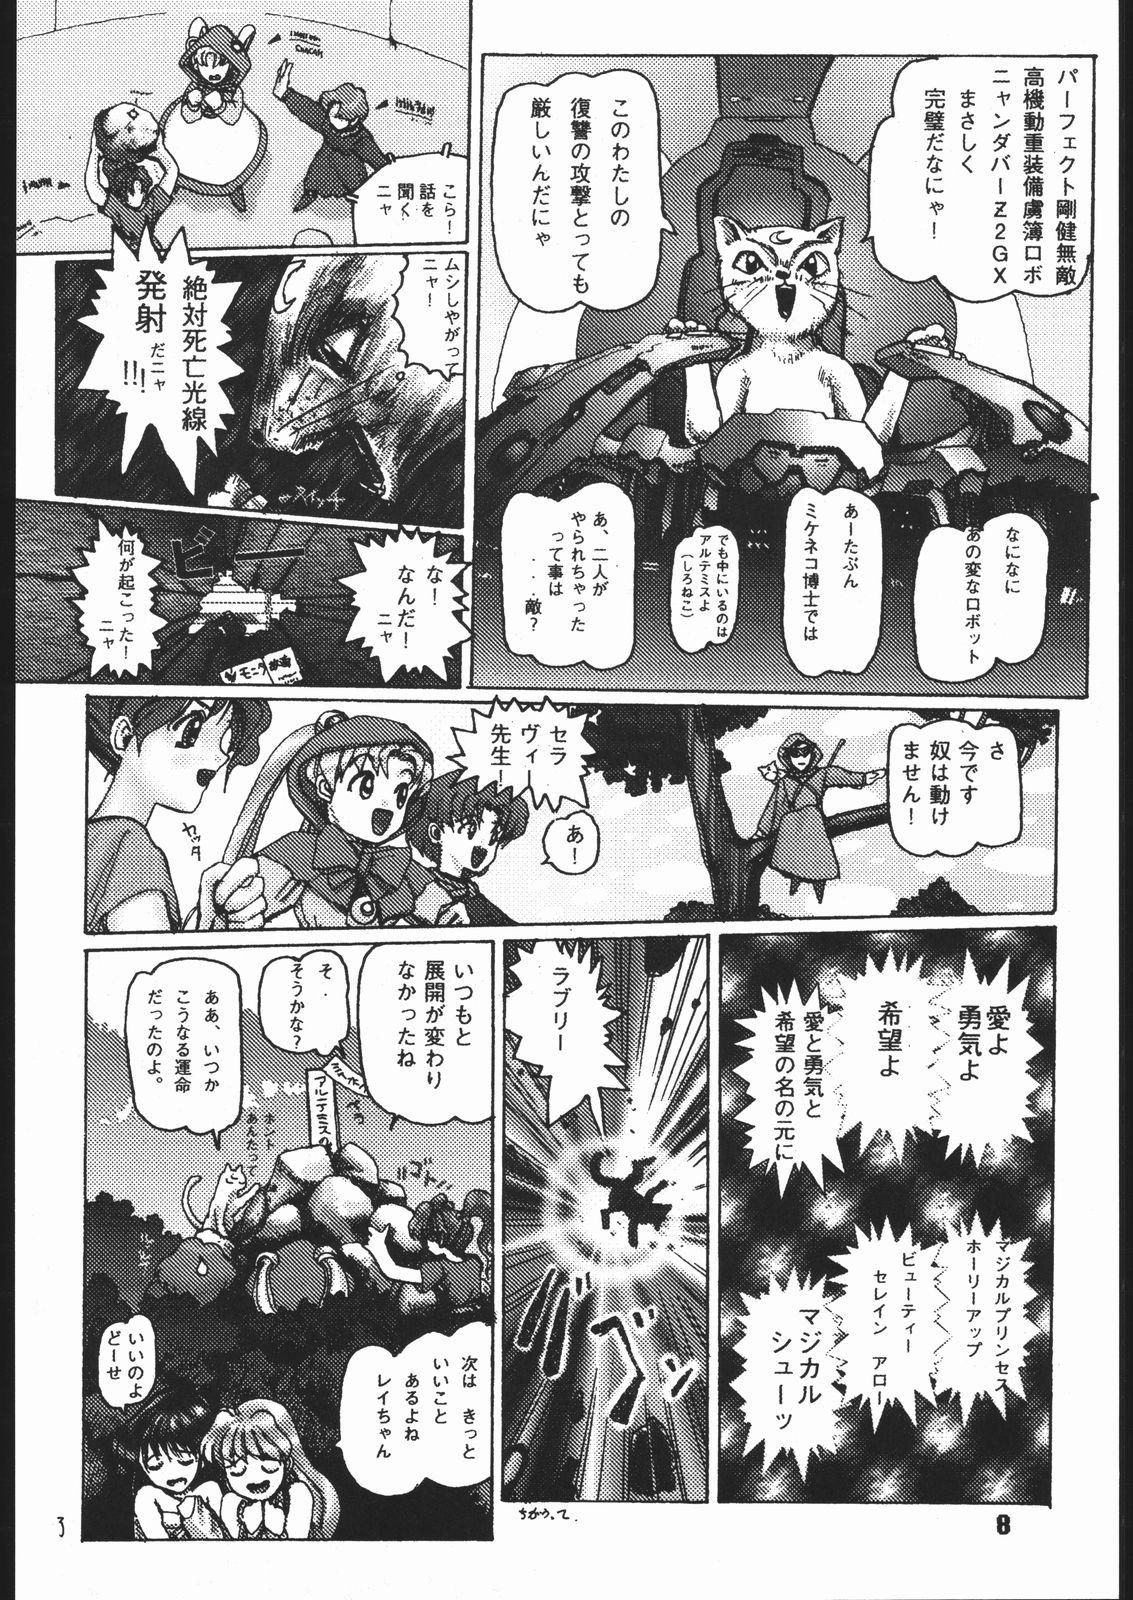 Realamateur miracle romance 3 - Sailor moon Tenchi muyo Eng Sub - Page 9